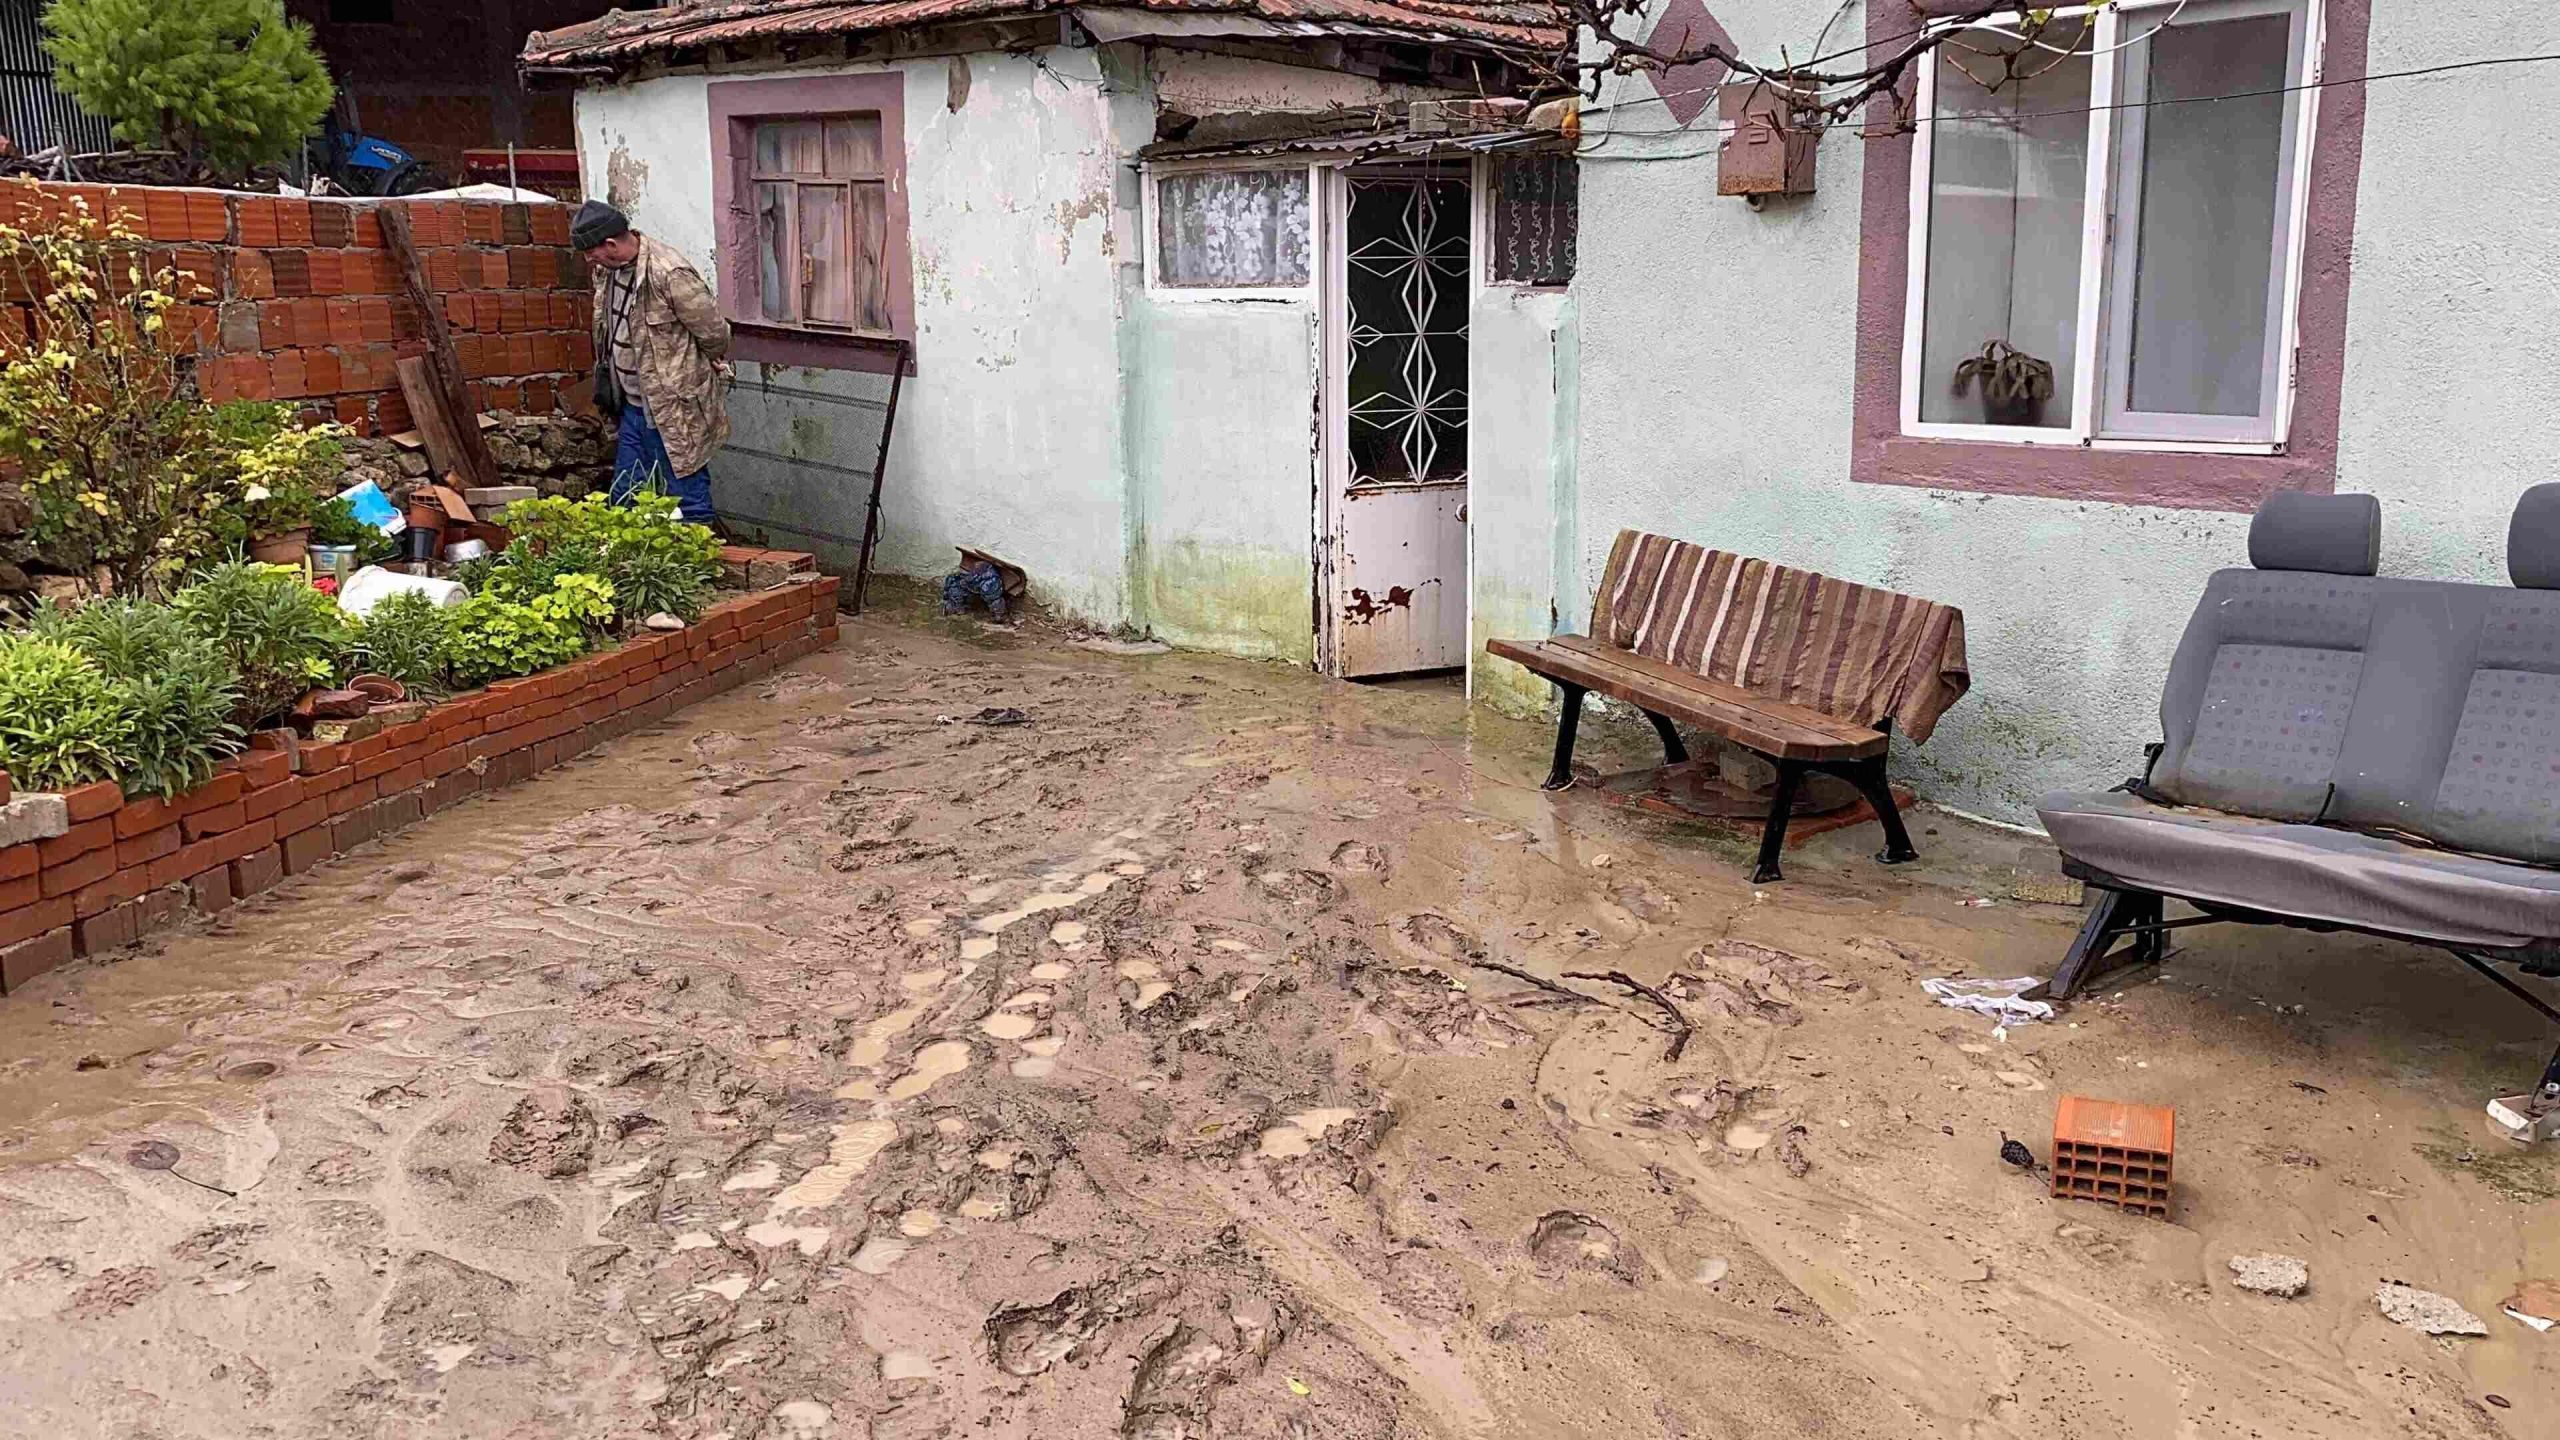 Hevige regen en stormen troffen Marmara